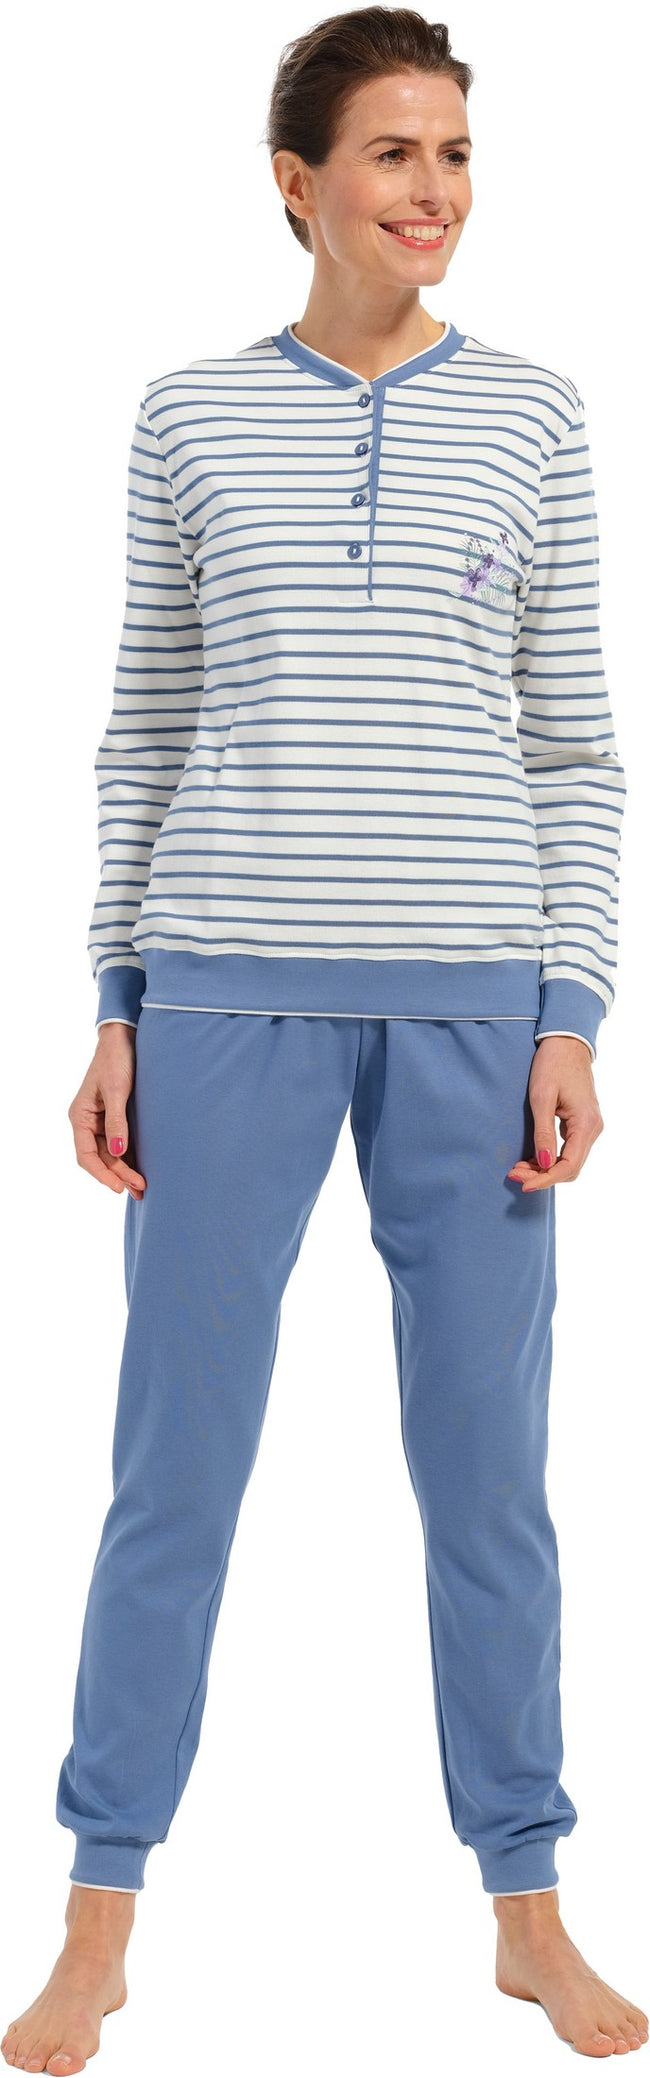 20232-172-4 Pastunette pyjama met boordjes